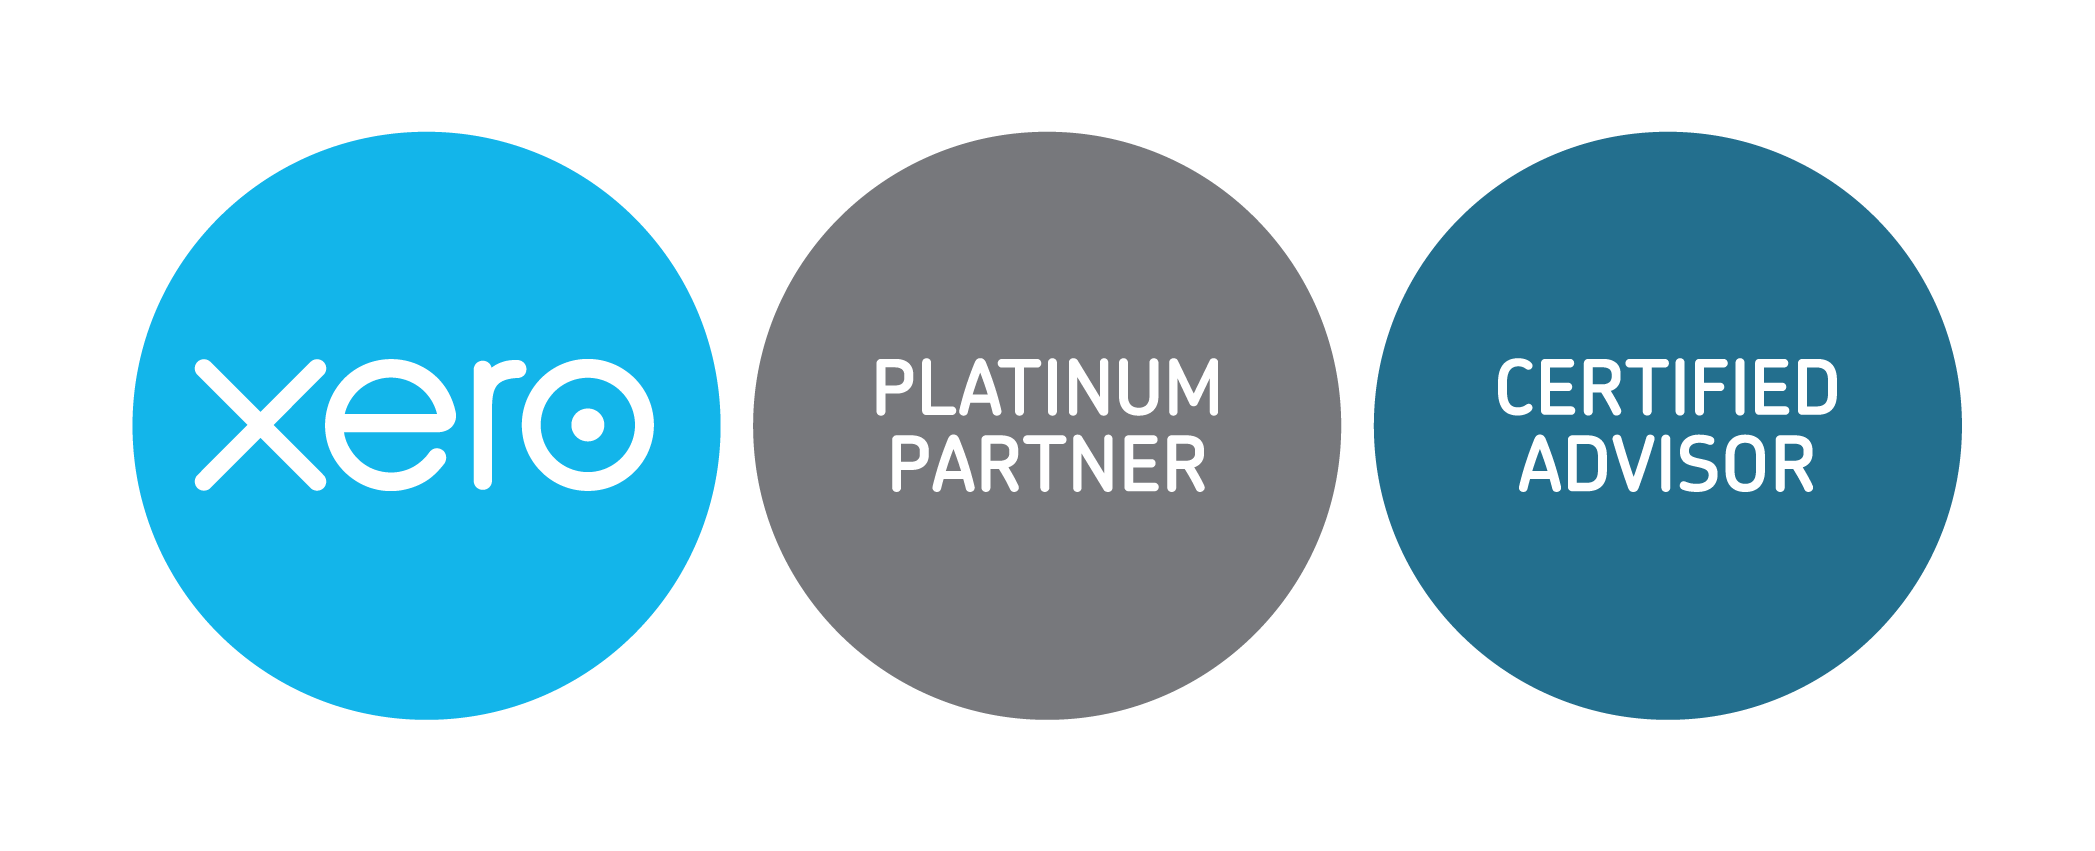 xero-platinum-partner + cert-advisor-badges-RGB